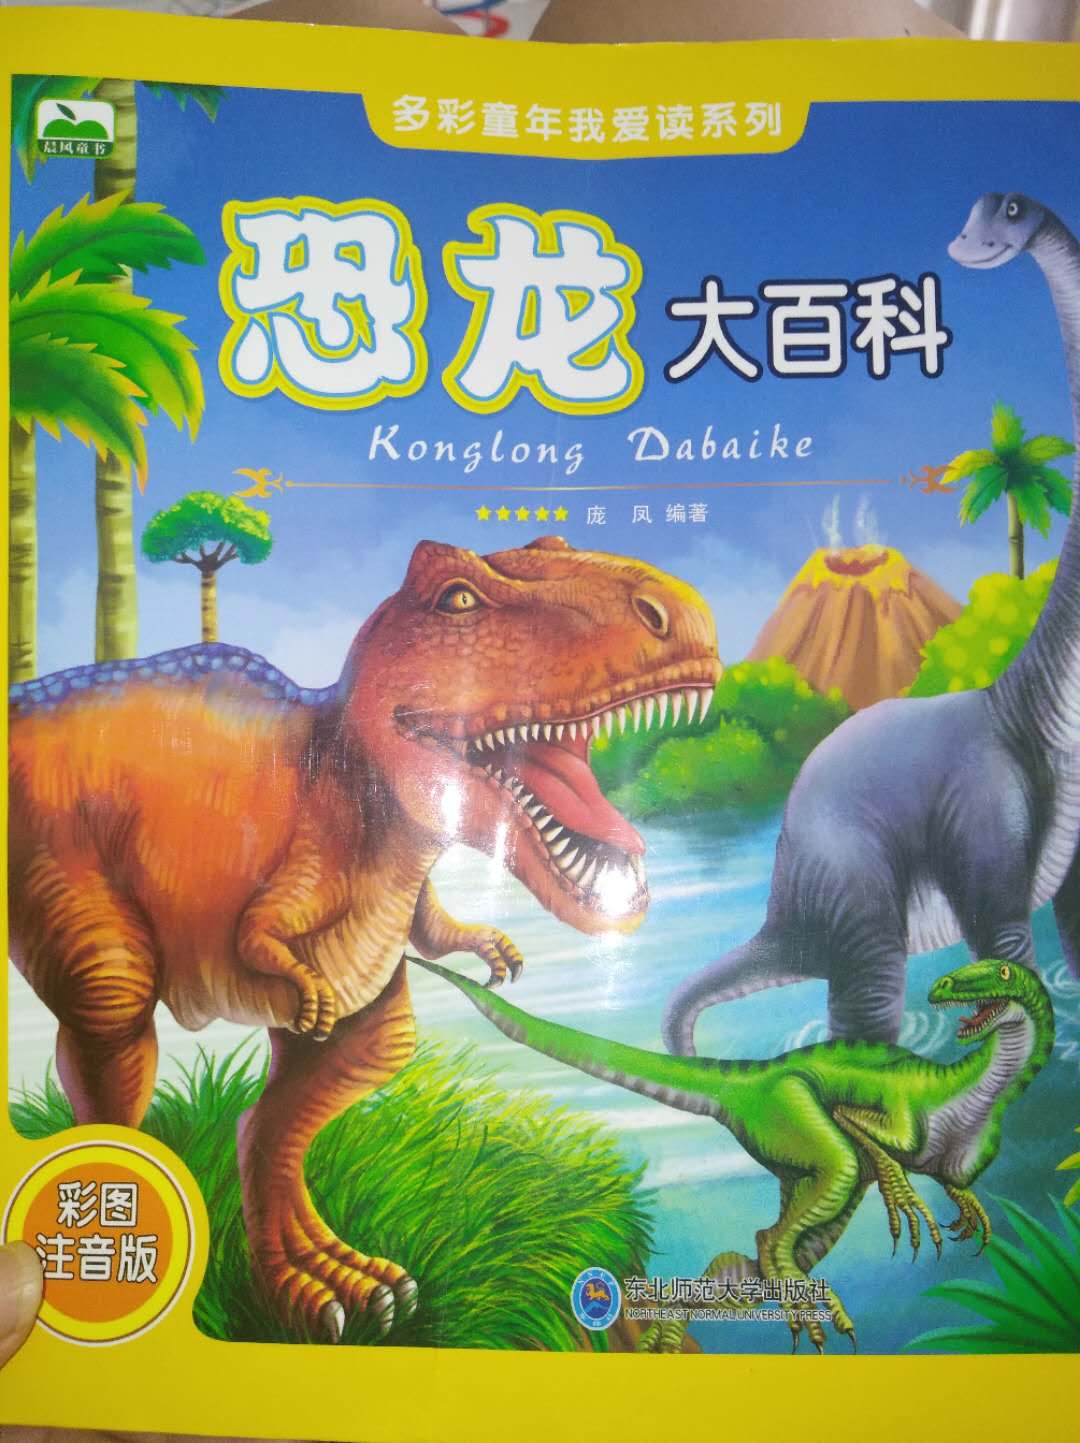 自从带儿子看了电影侏罗纪公园后，儿子喜欢上对恐龙的研究，每天都会要我给他讲恐龙的故事。这书非常好。很全面!